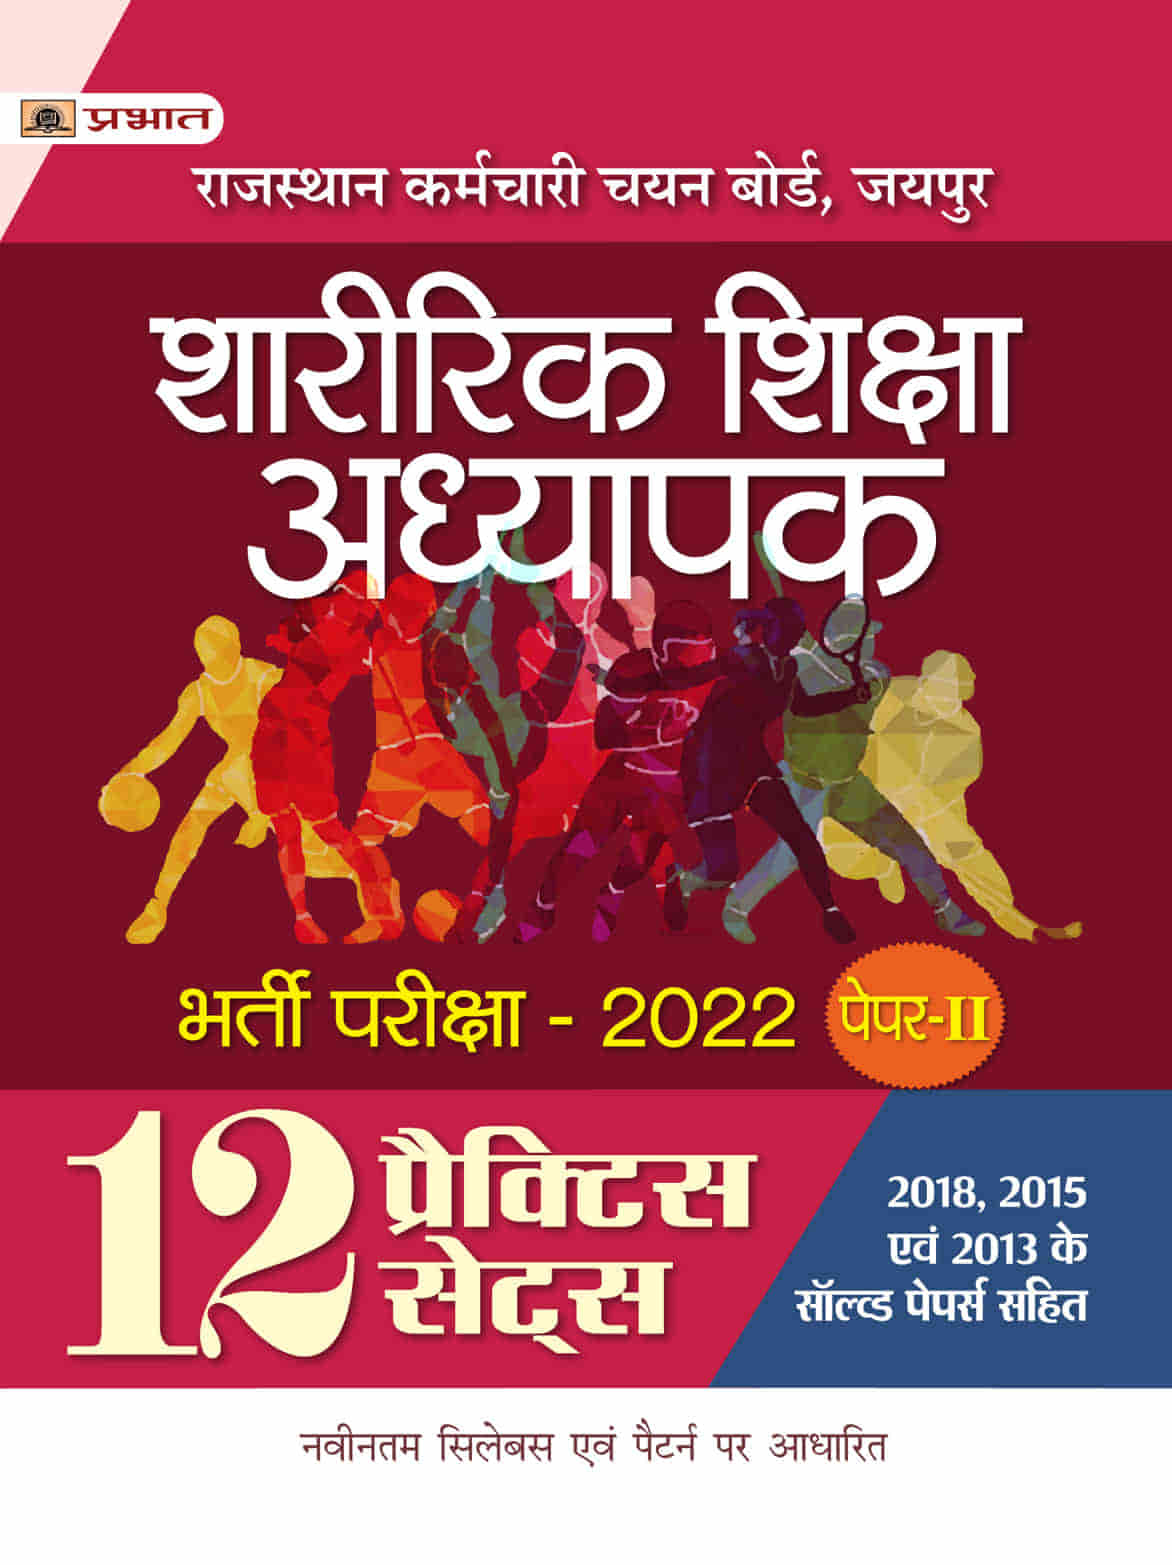 Rajasthan Karamchari Chayan Board, Jaipur Sharirik Shiksha Adhyapak Bharti Pariksha-2022 Paper-II 12 Practice Sets for RSMSSB, RPSC & other Competitive Exams